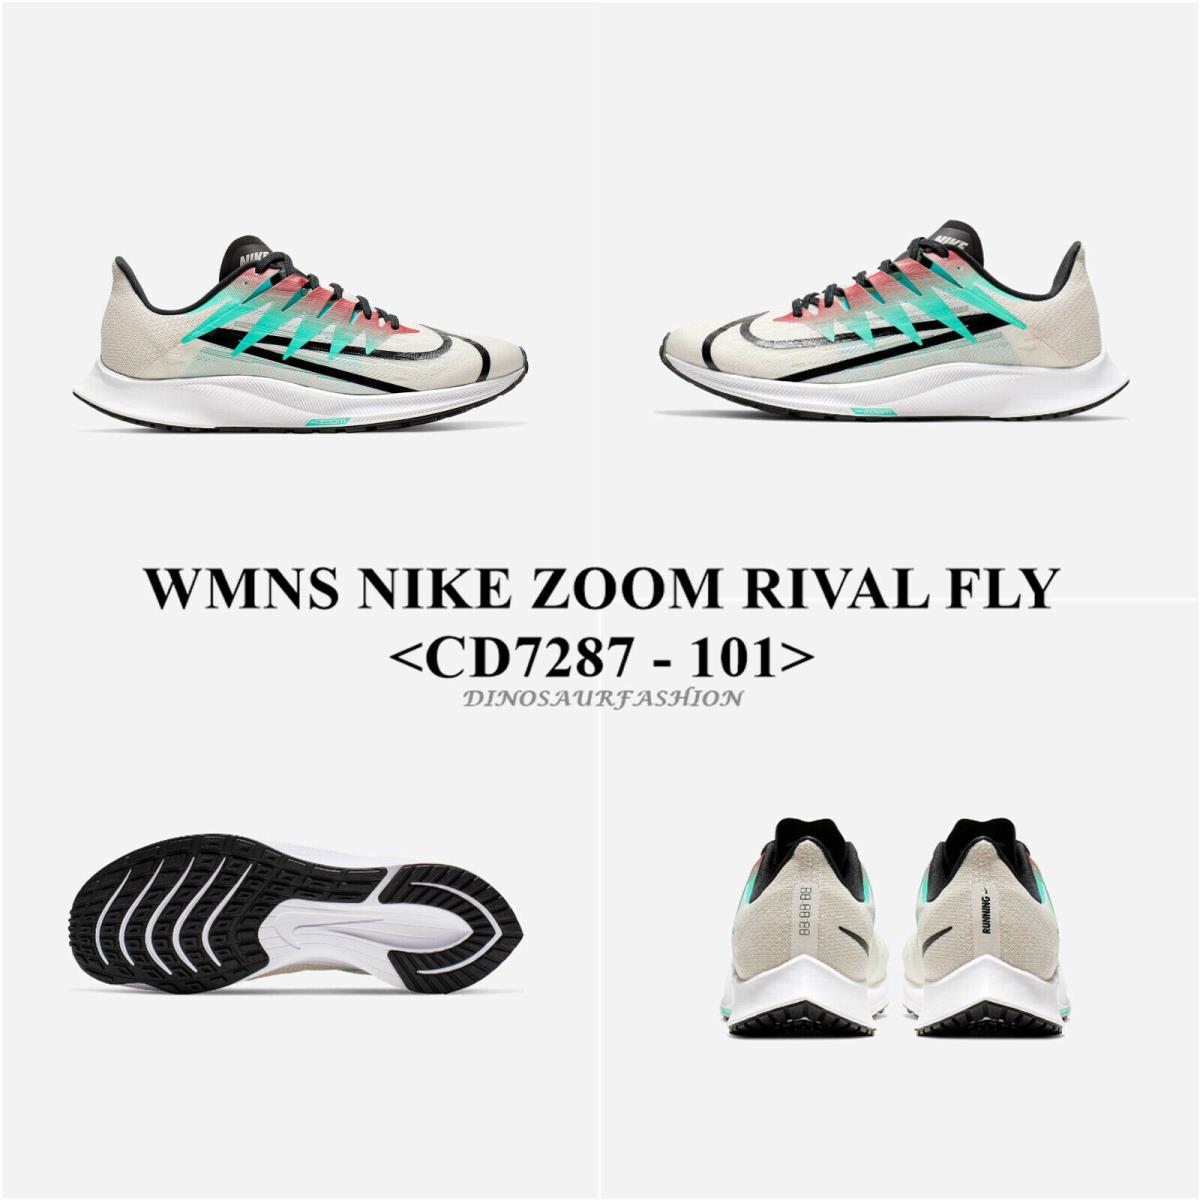 Wmn`s Nike Zoom Rival Fly <CD7287 - 101> Women`s Running/sneaker Shoes W Box - PALE IVORY/BLACK-HYPER JADE